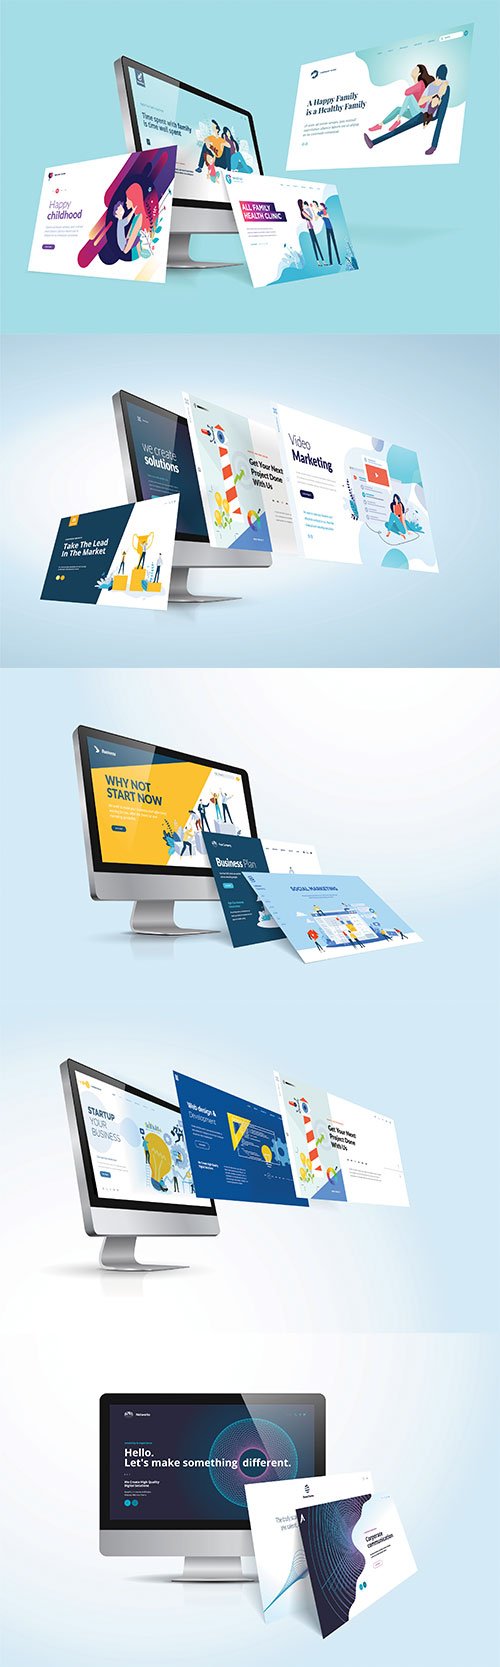 Vector Illustration Concept Of Website Design